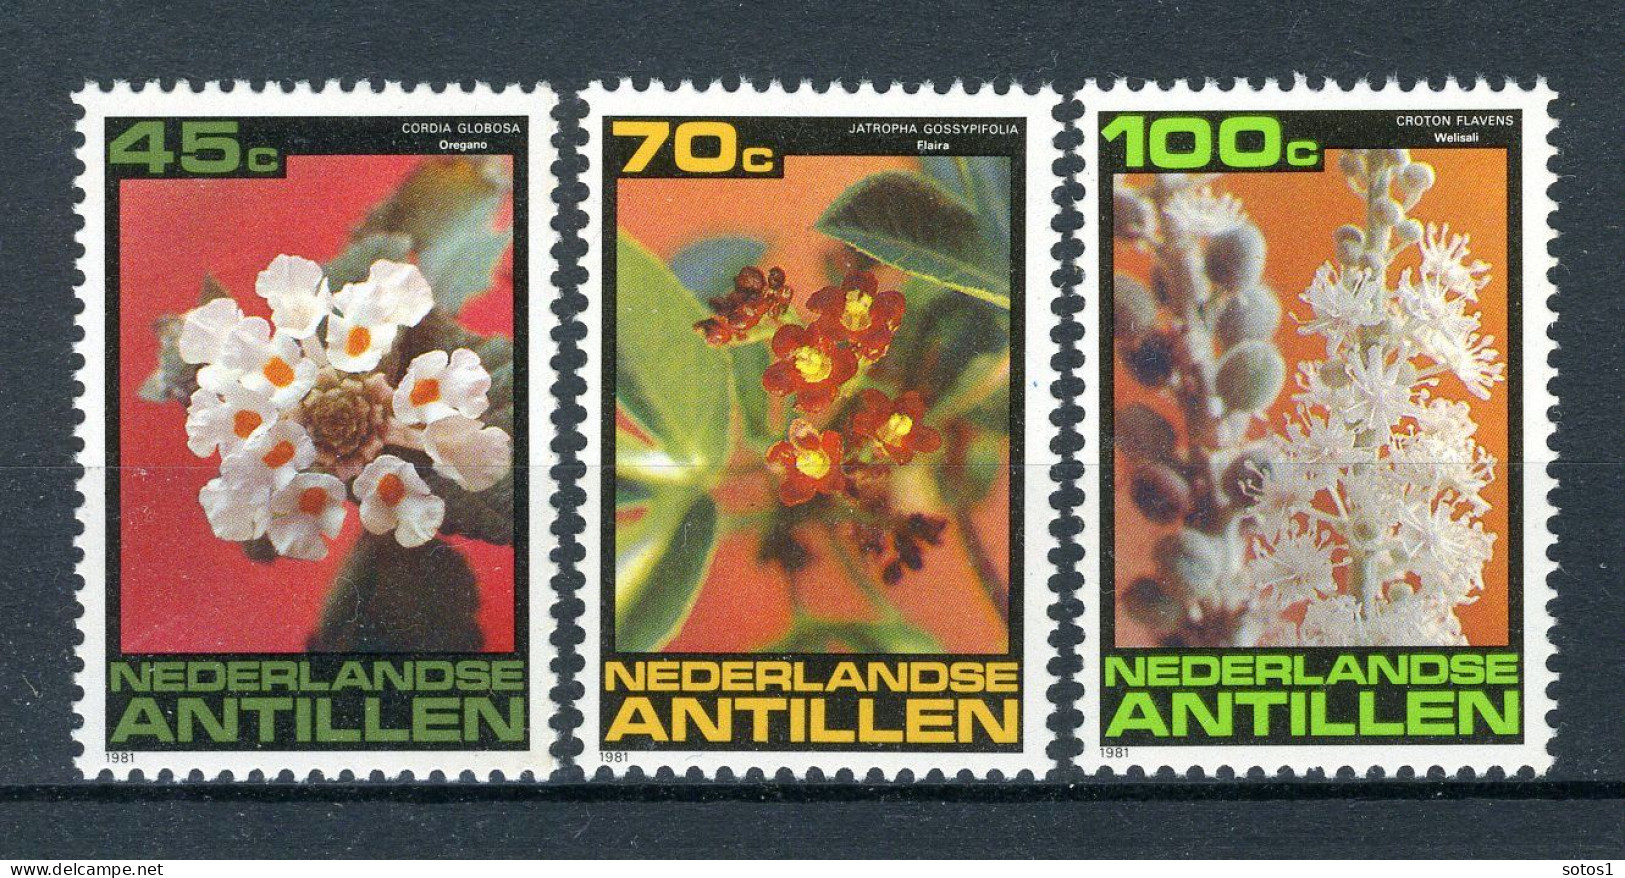 NL. ANTILLEN 700/702 MNH 1981 - Flora. - Curacao, Netherlands Antilles, Aruba